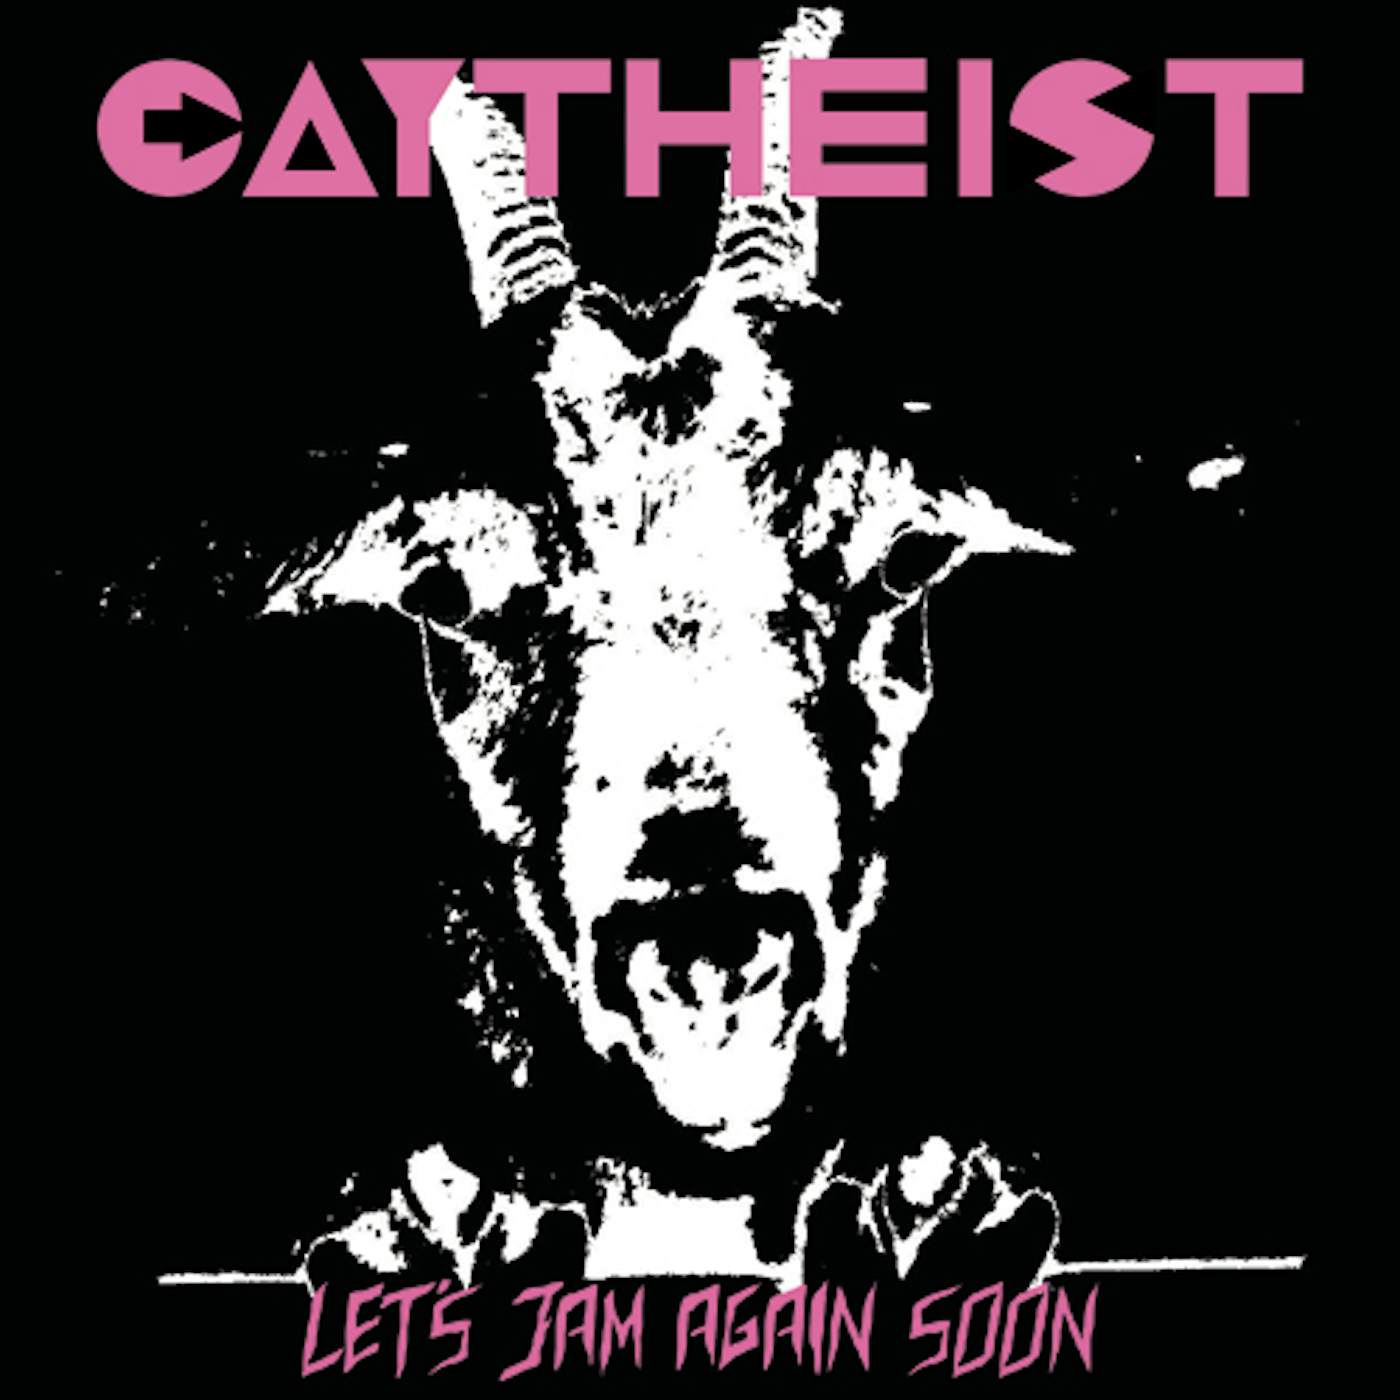 Gaytheist Let's Jam Again Soon Vinyl Record